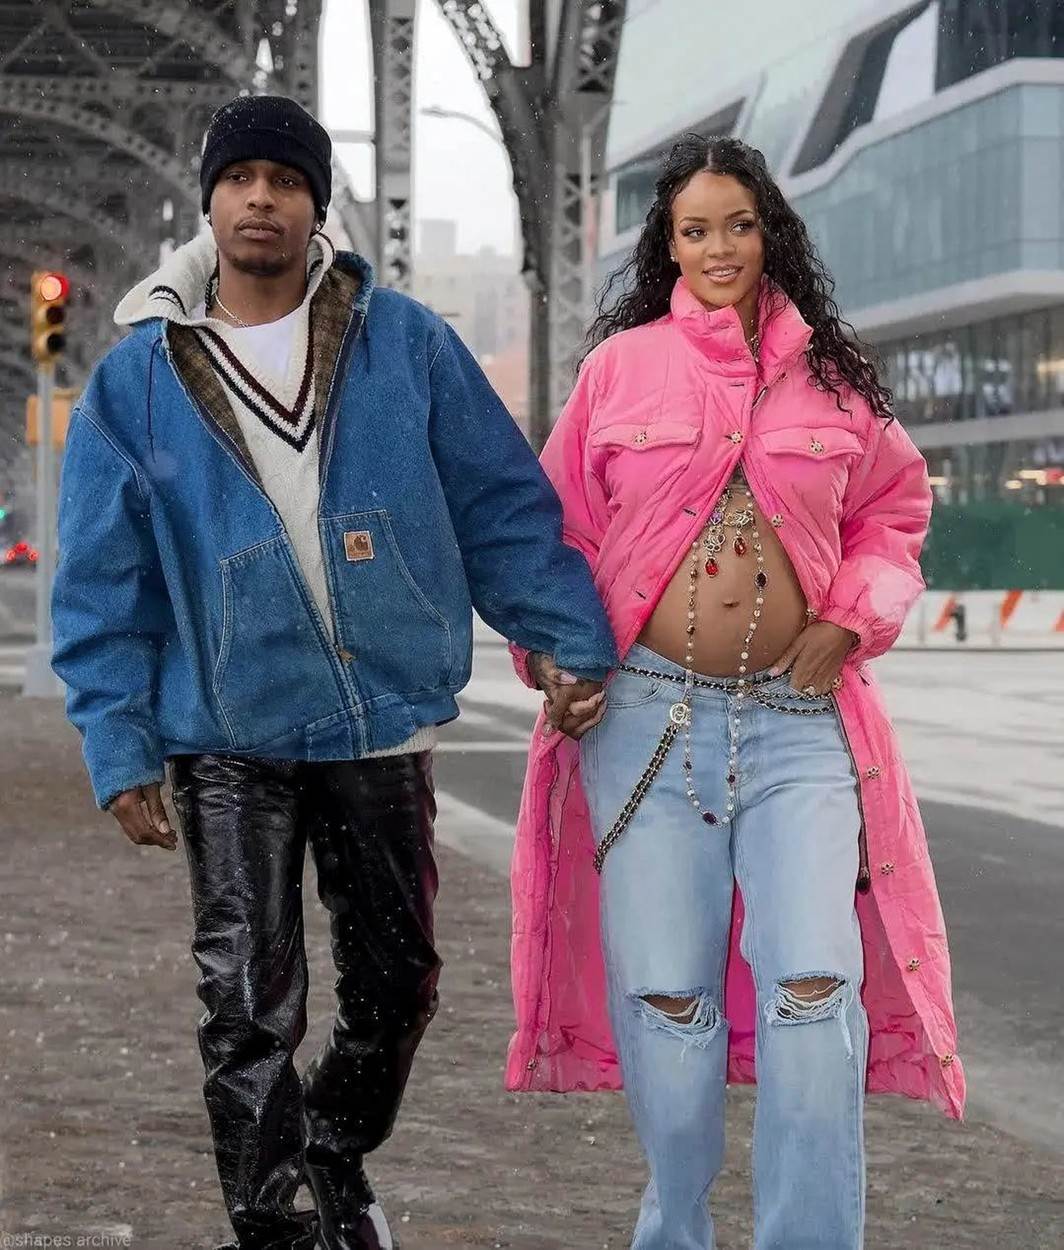  Rijana u rozoj Chanel jakni otkrila trudnički stomak. 